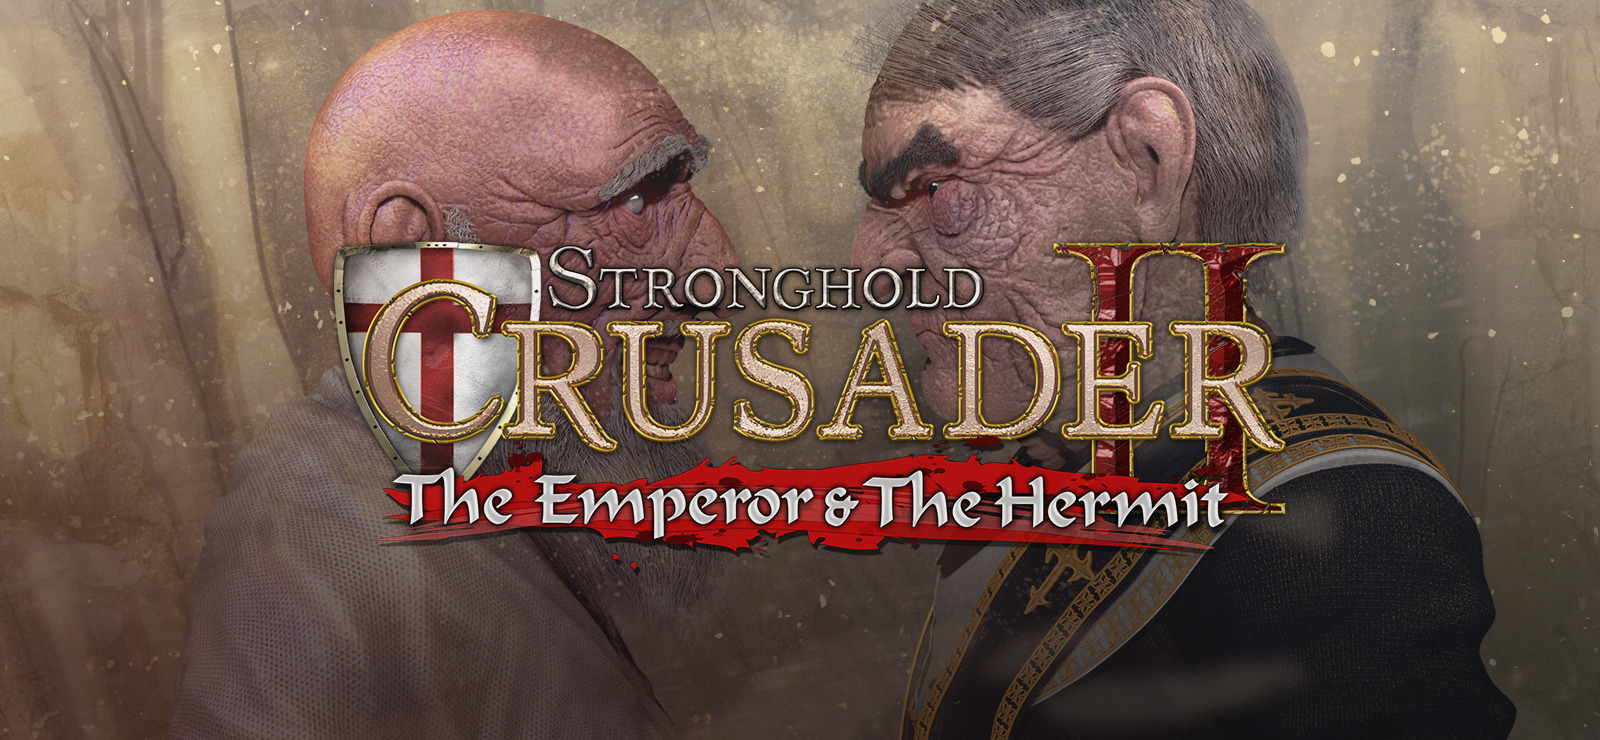 stronghold crusader 2 build order